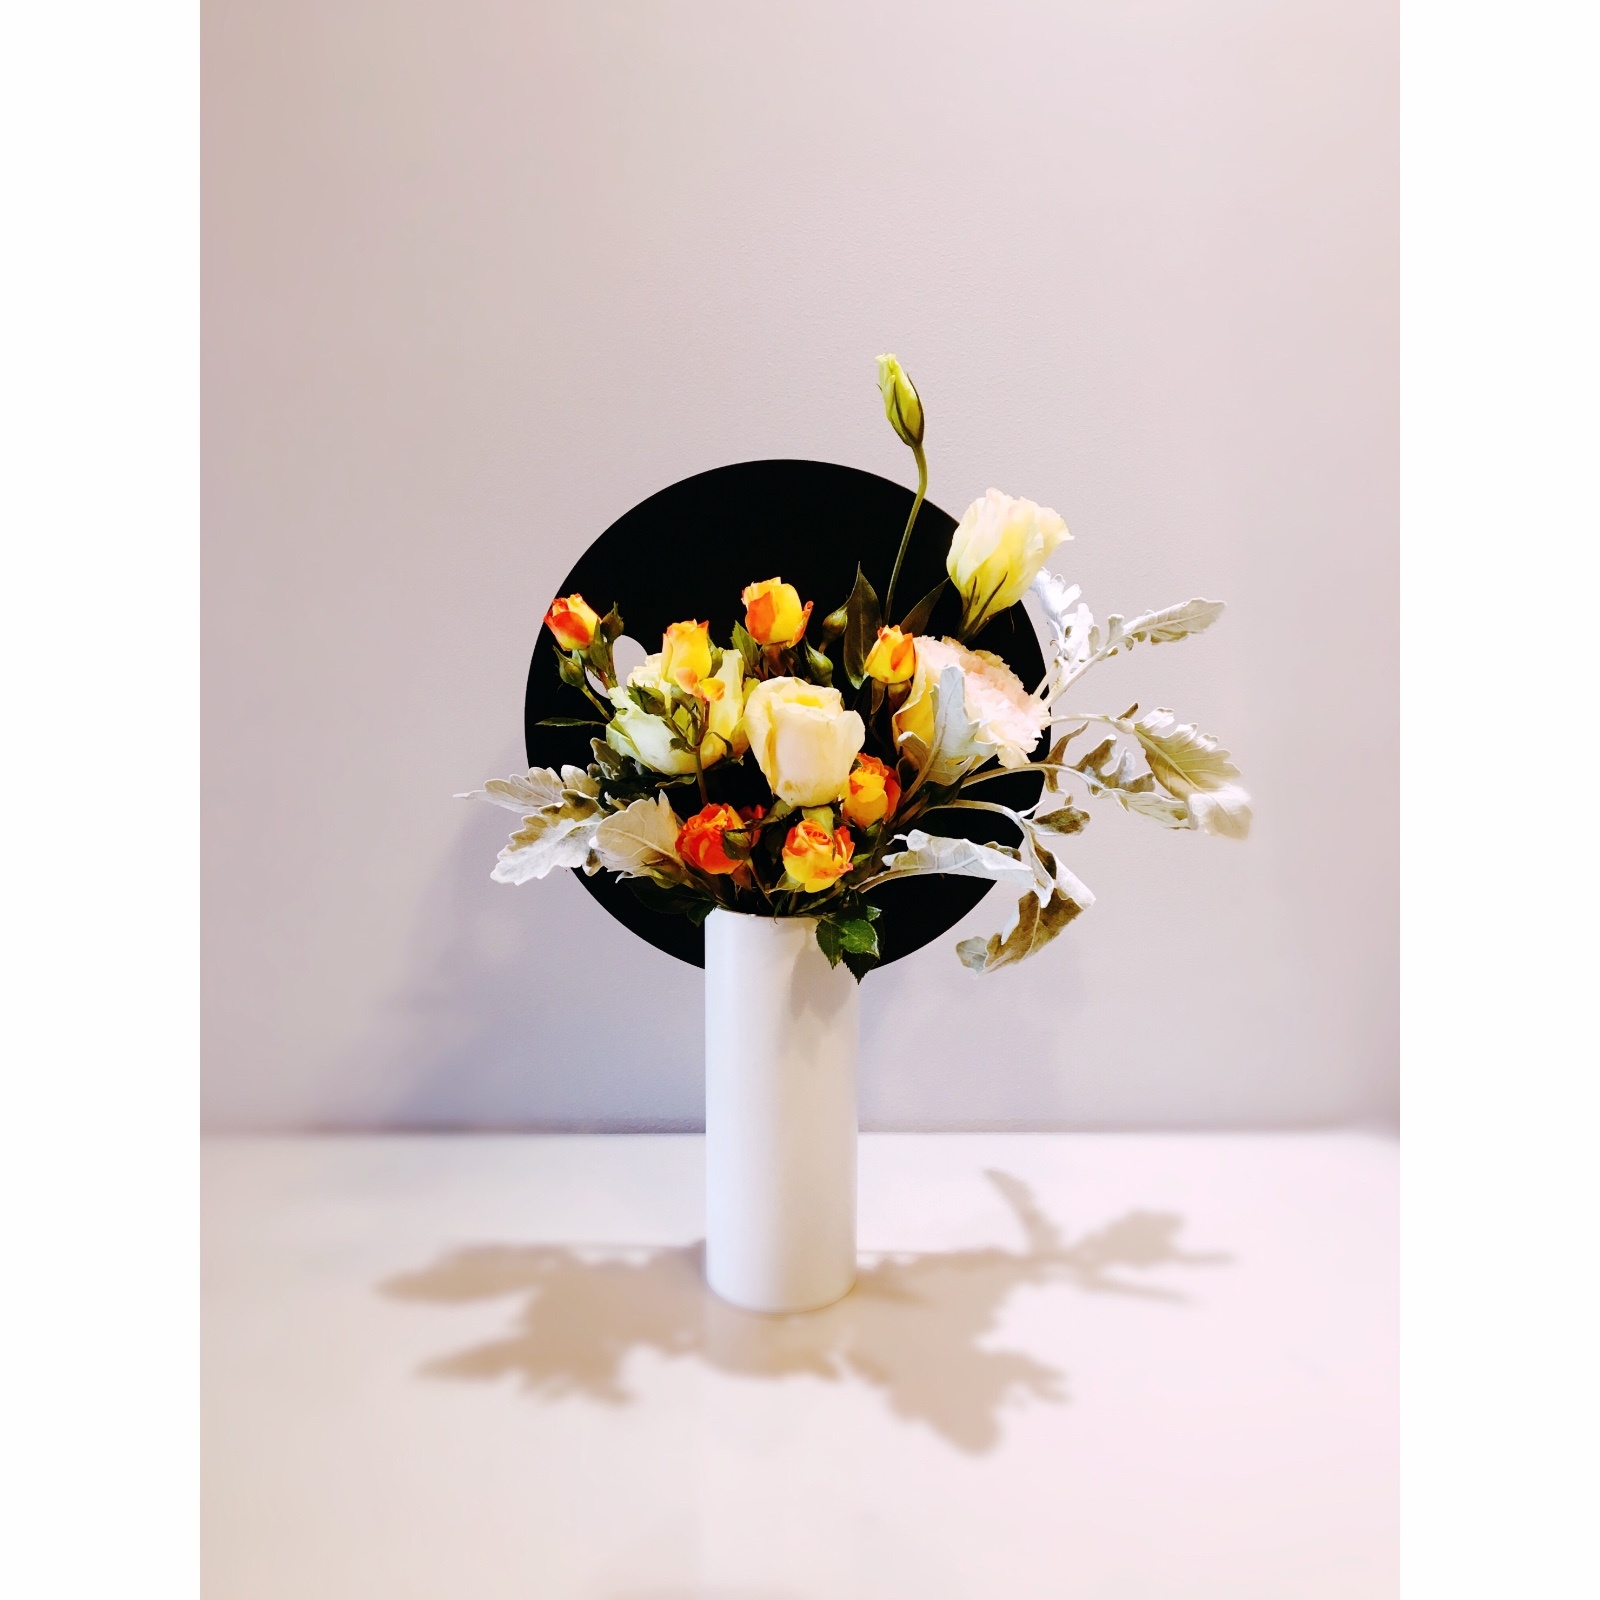 ಠ_ಠJUJU对圆率组合装饰花瓶发布的晒单效果图及评价